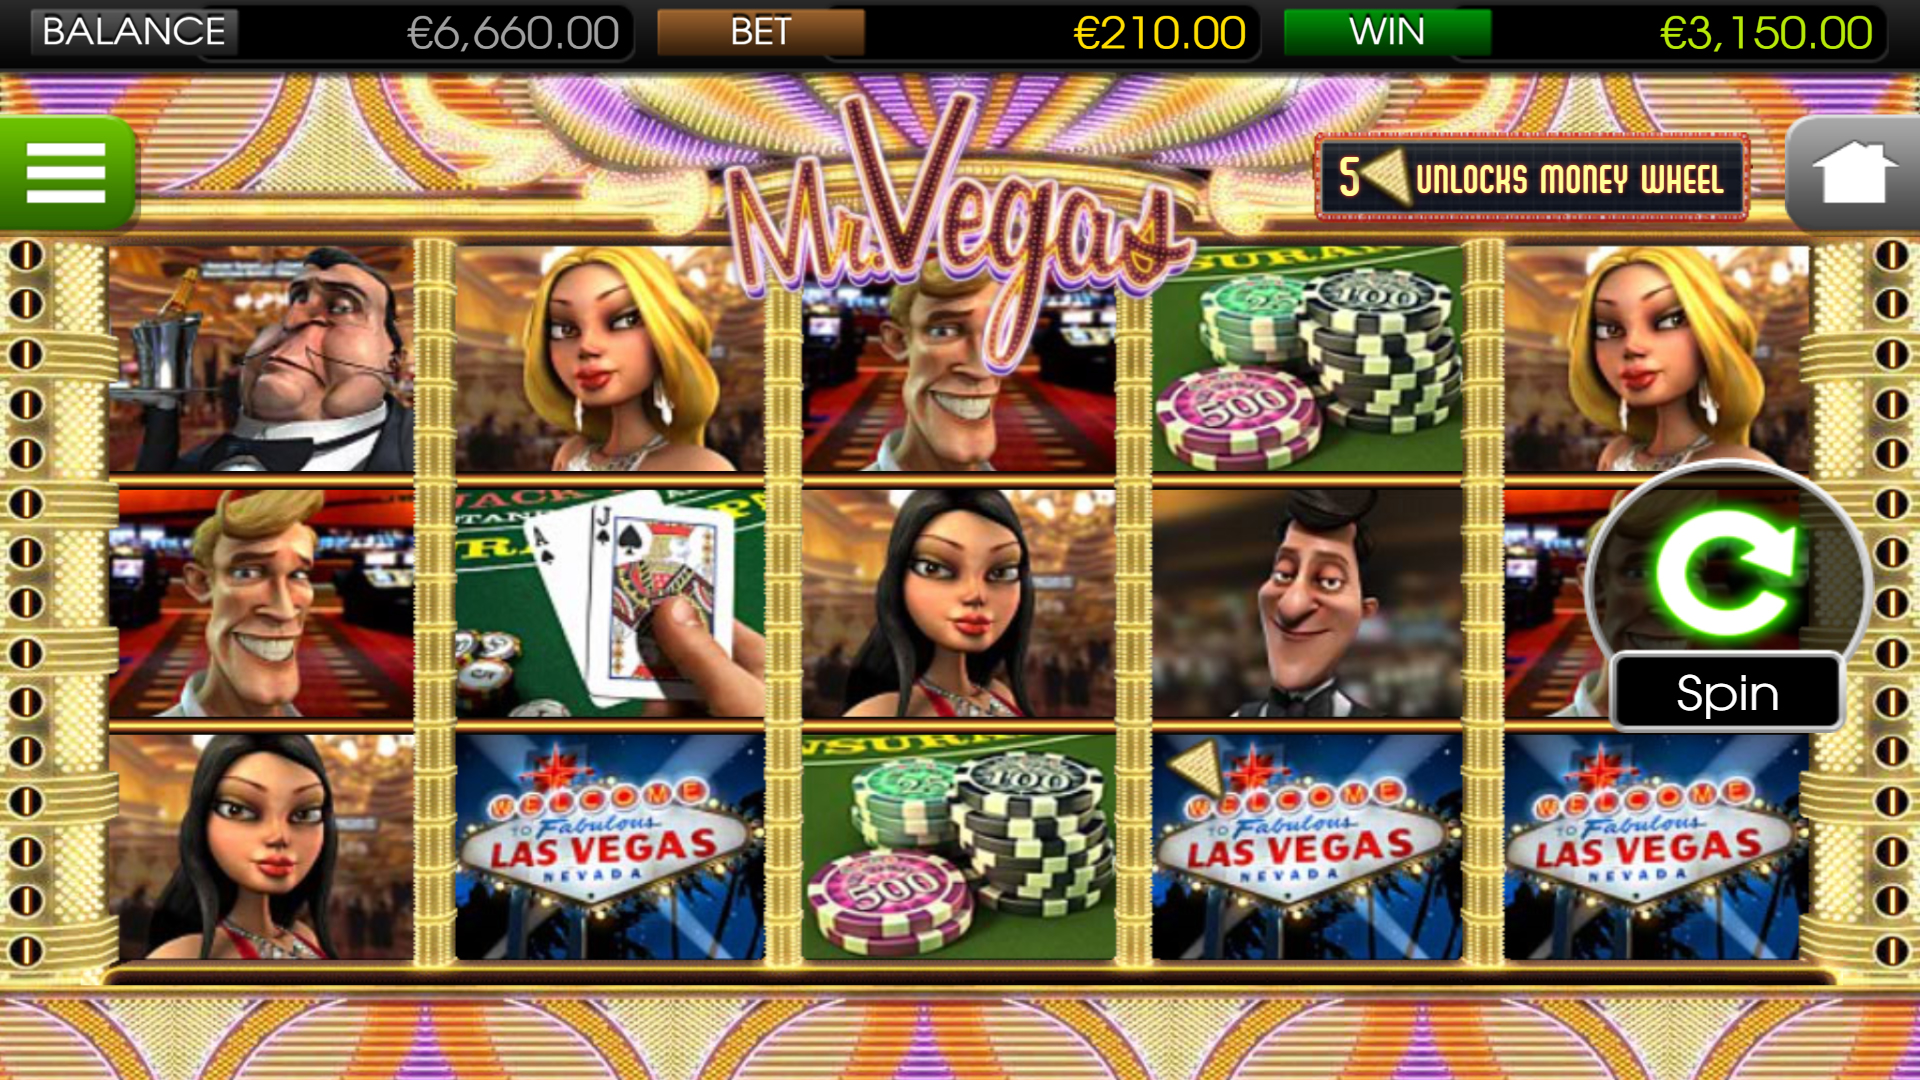 Mr. Vegas - Main Game